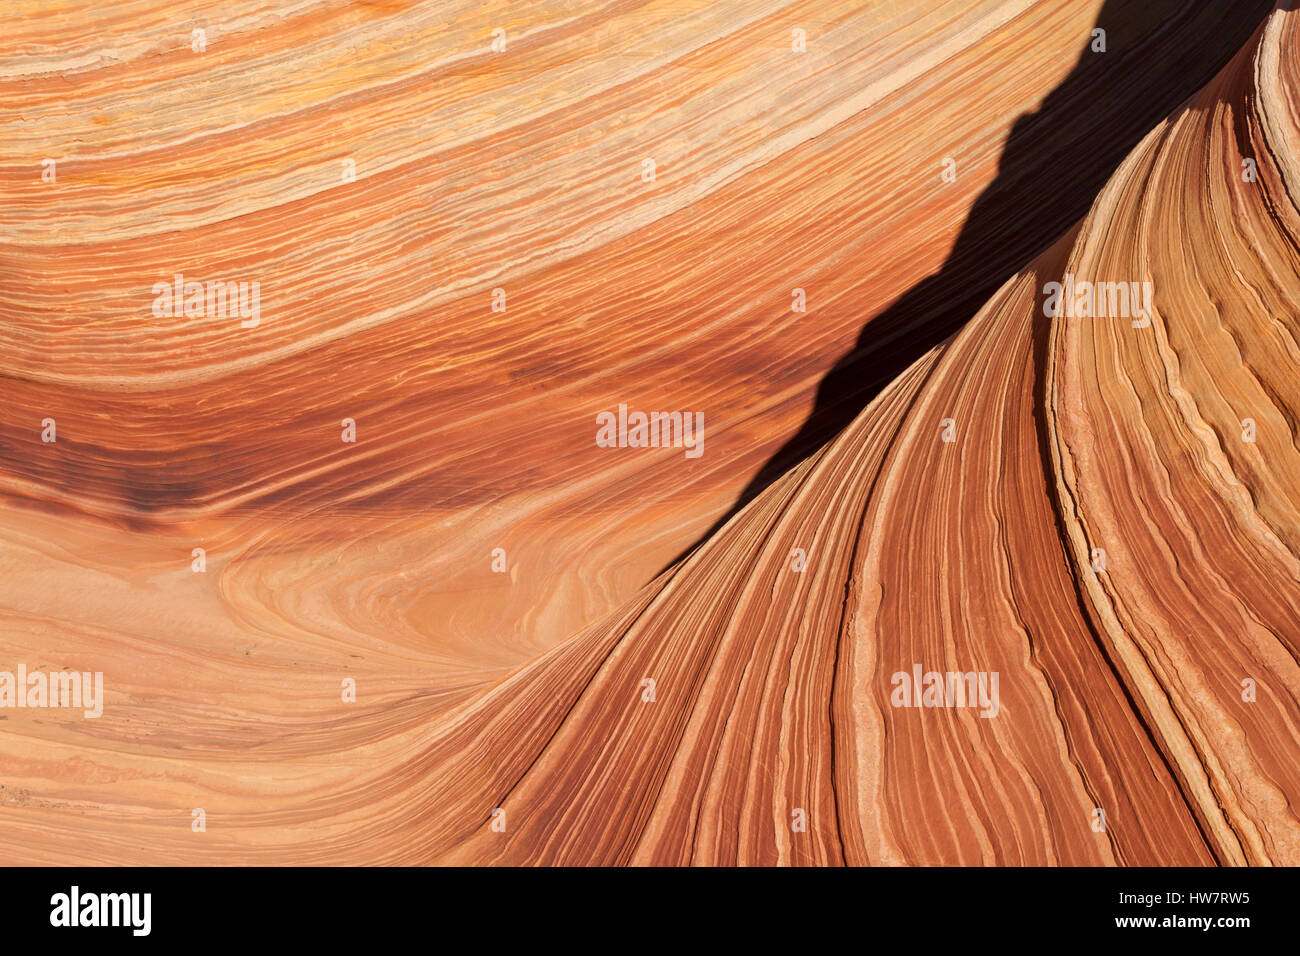 Dettaglio dell'onda, Paria Canyon-Vermillion Cliffs Wilderness, confine Arizona-Utah. Foto Stock